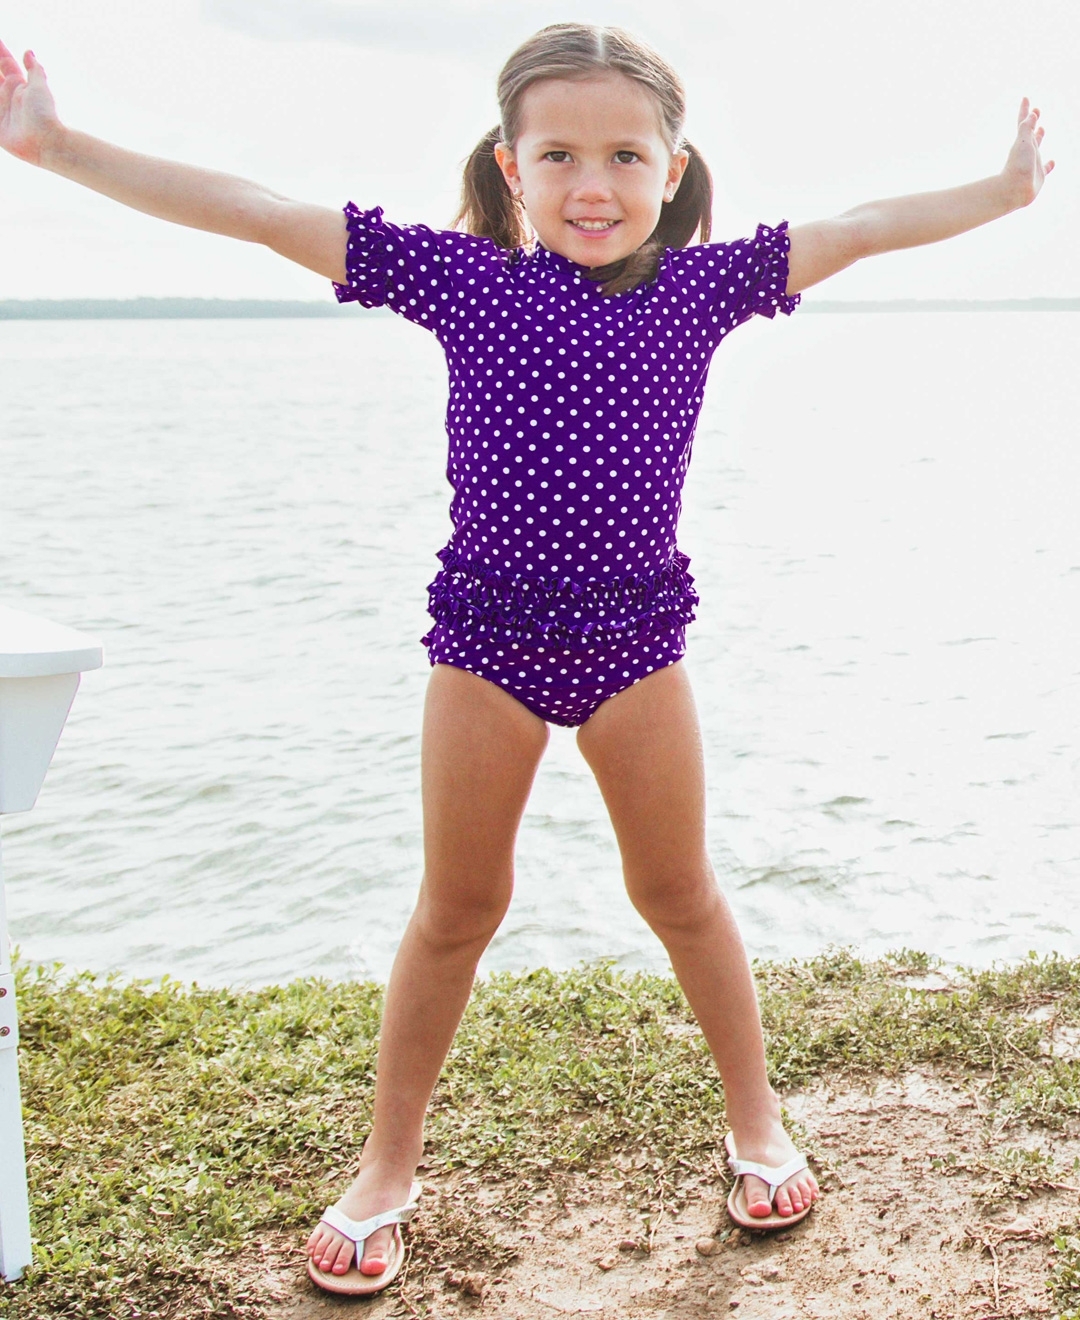 Sun Protection RuffleButts Girls Rash Guard Short Sleeve 2-Piece Swimsuit Set Polka Dot Bikini with UPF 50 